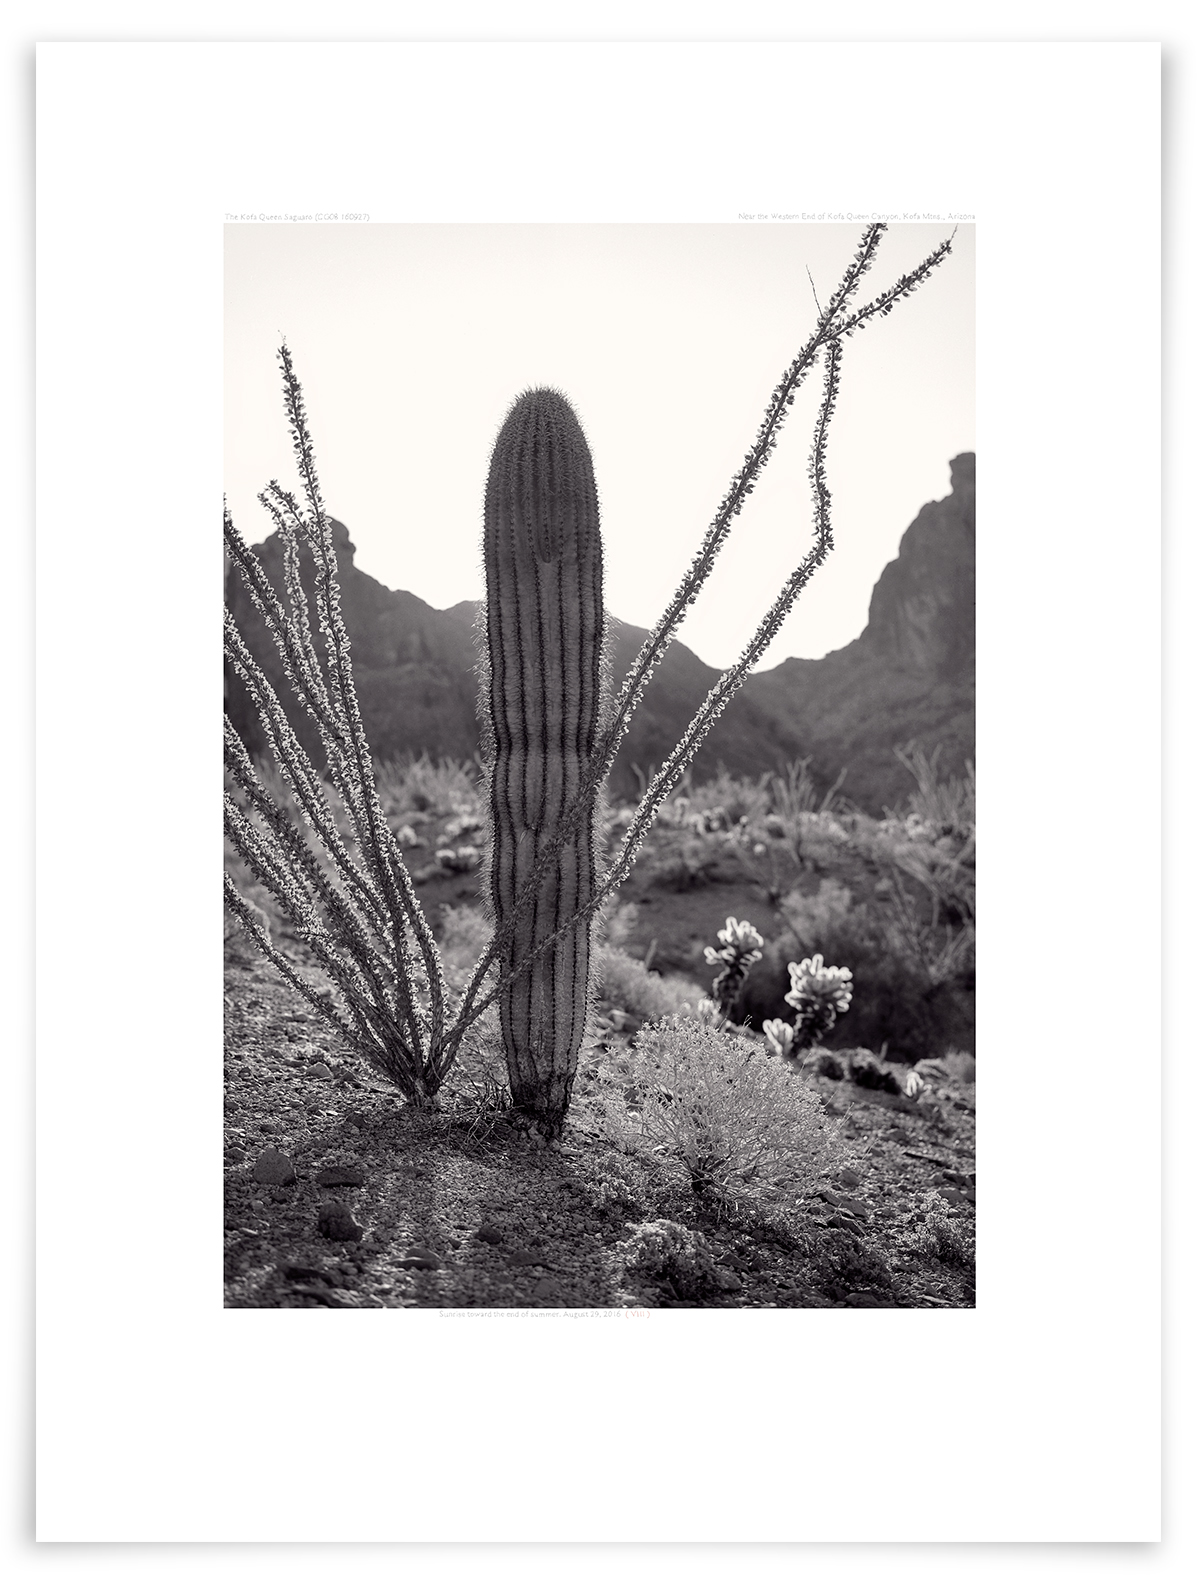   The Kofa Queen Saguaro (CG08 160927)   24 x 18 in (61 x 46 cm)                      